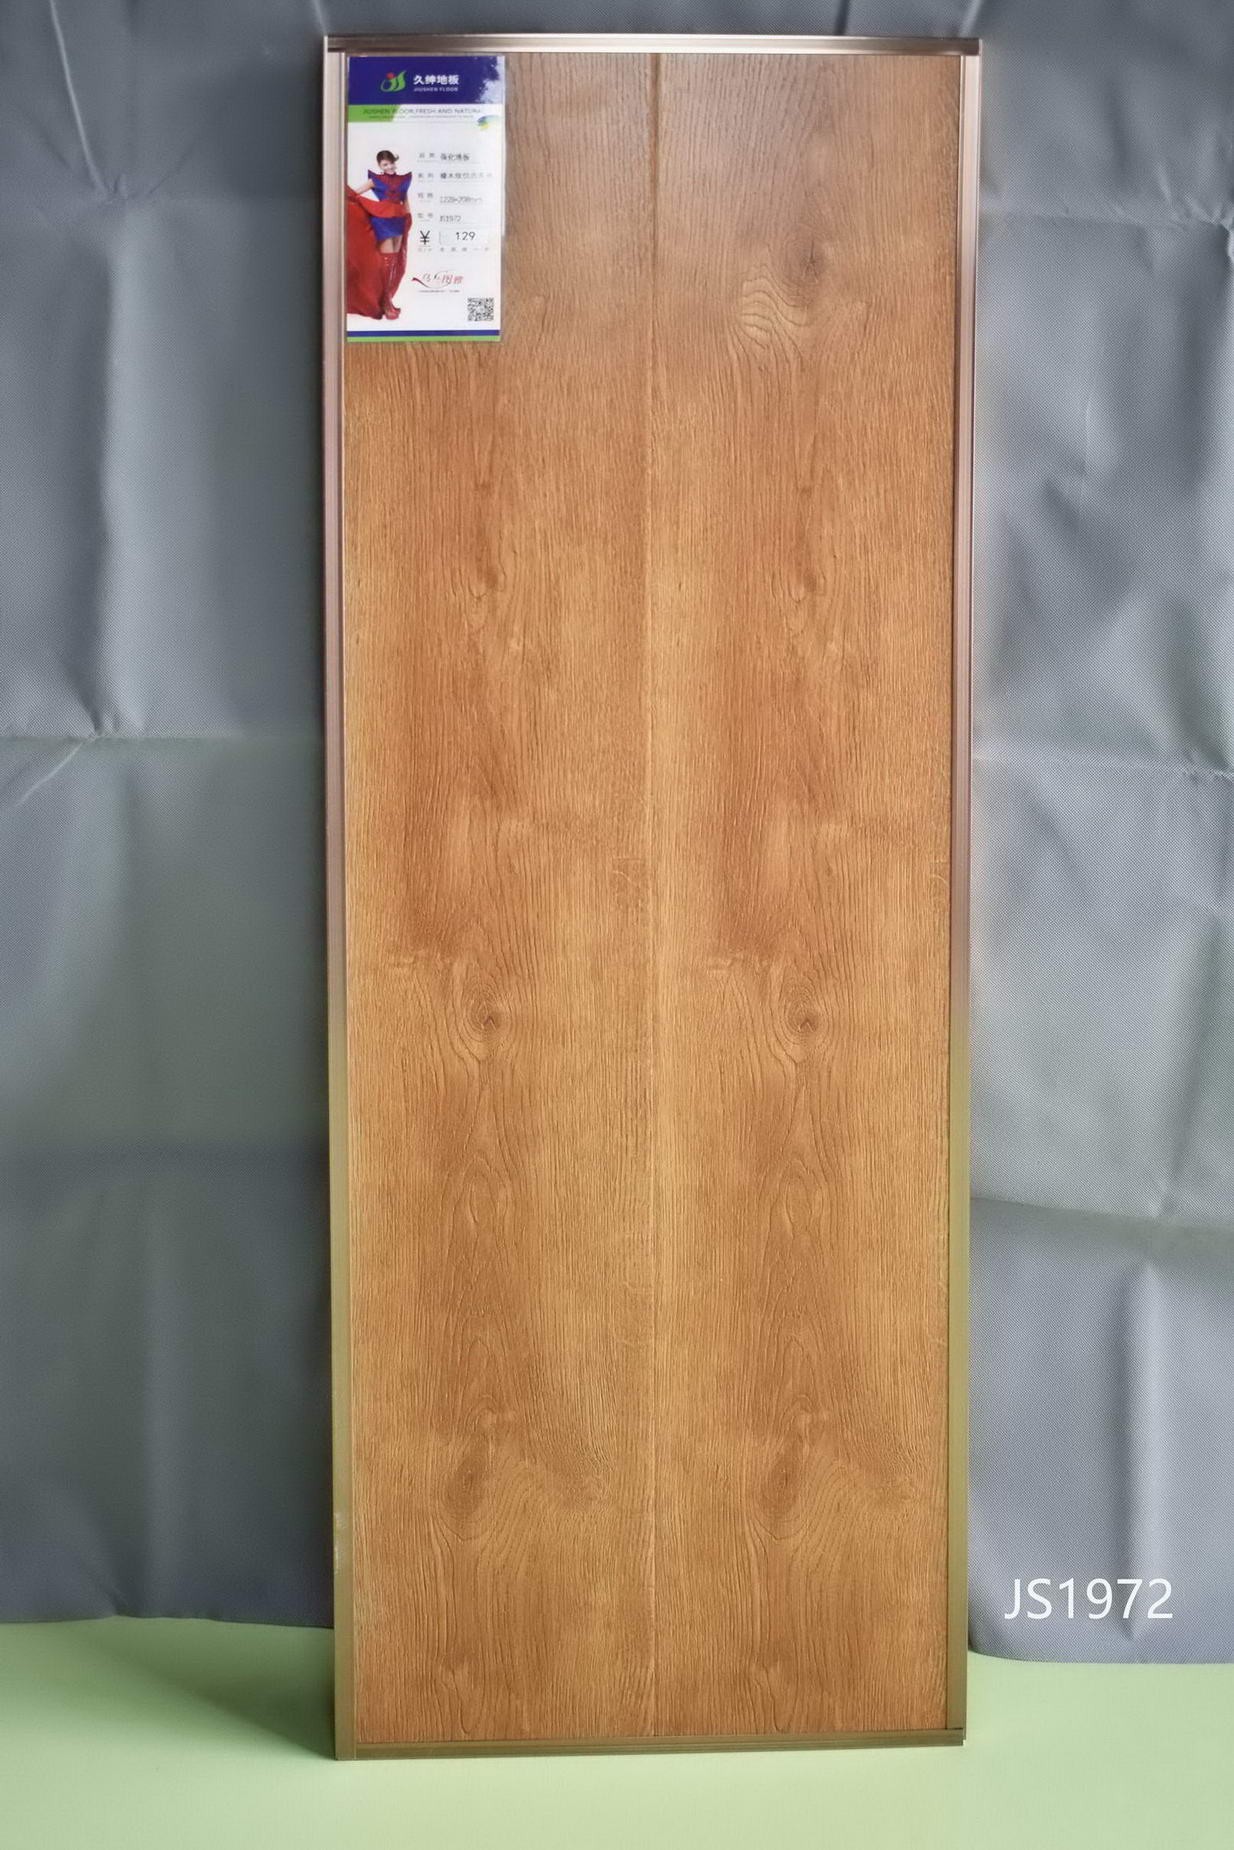 高清耐磨花色纸 绿色选材 E1级大豆环保用胶 强化复合地板 久绅地板5